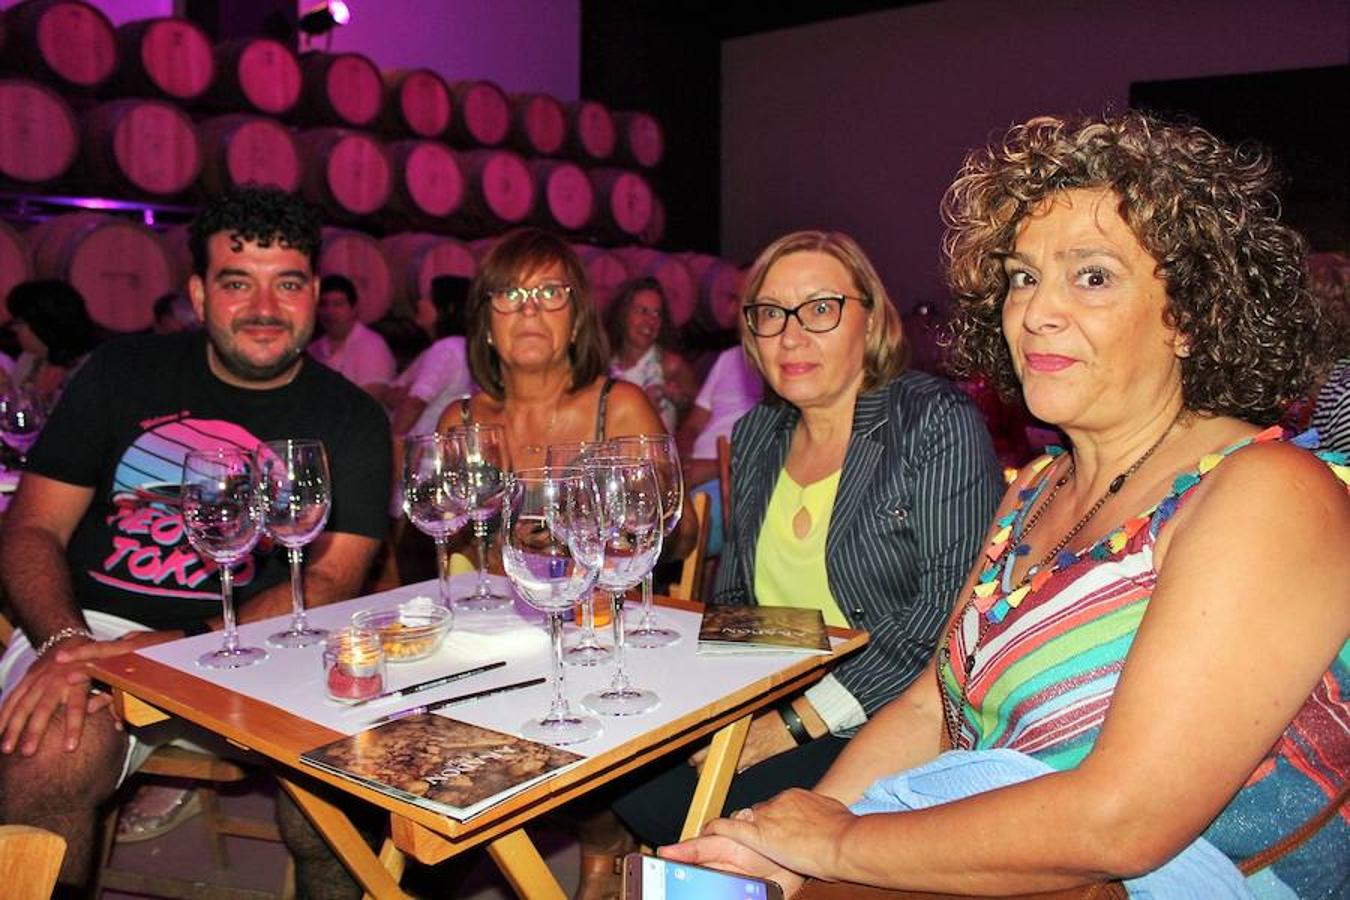 Actuaciones musicales con motivo del programa 'El Rioja y lo 5 sentidos' que ayer arrancó en Baños y Alcanadre.